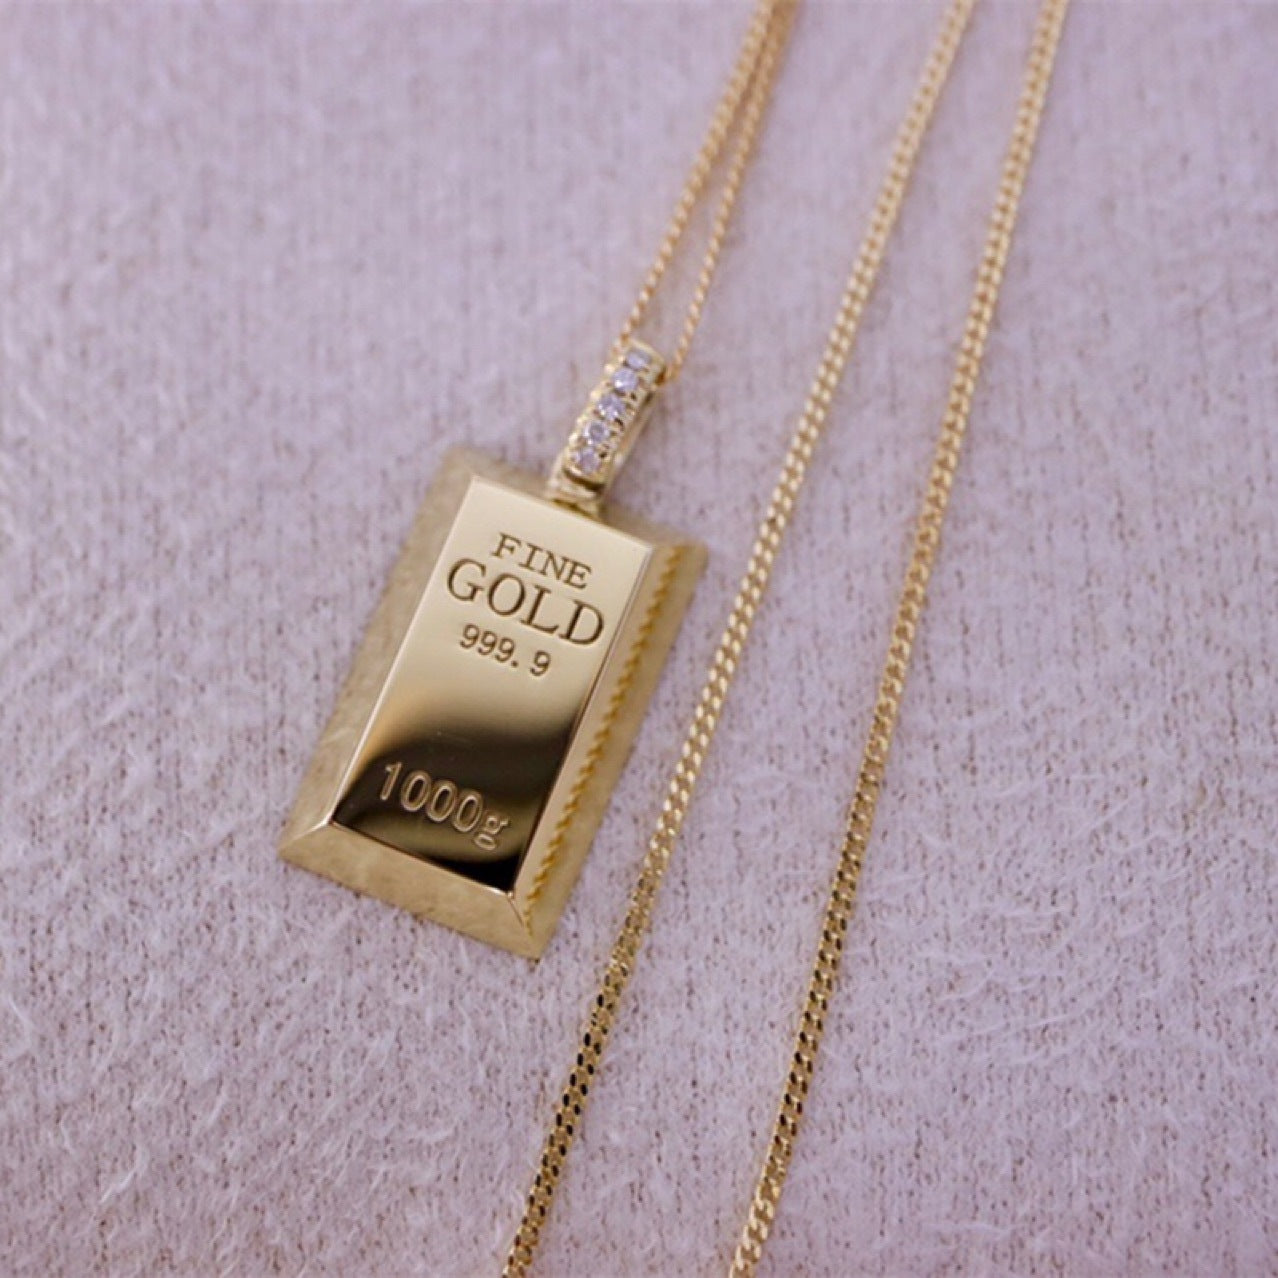 Au750 Gold Gold Bar Natural Diamond Pendant Necklace